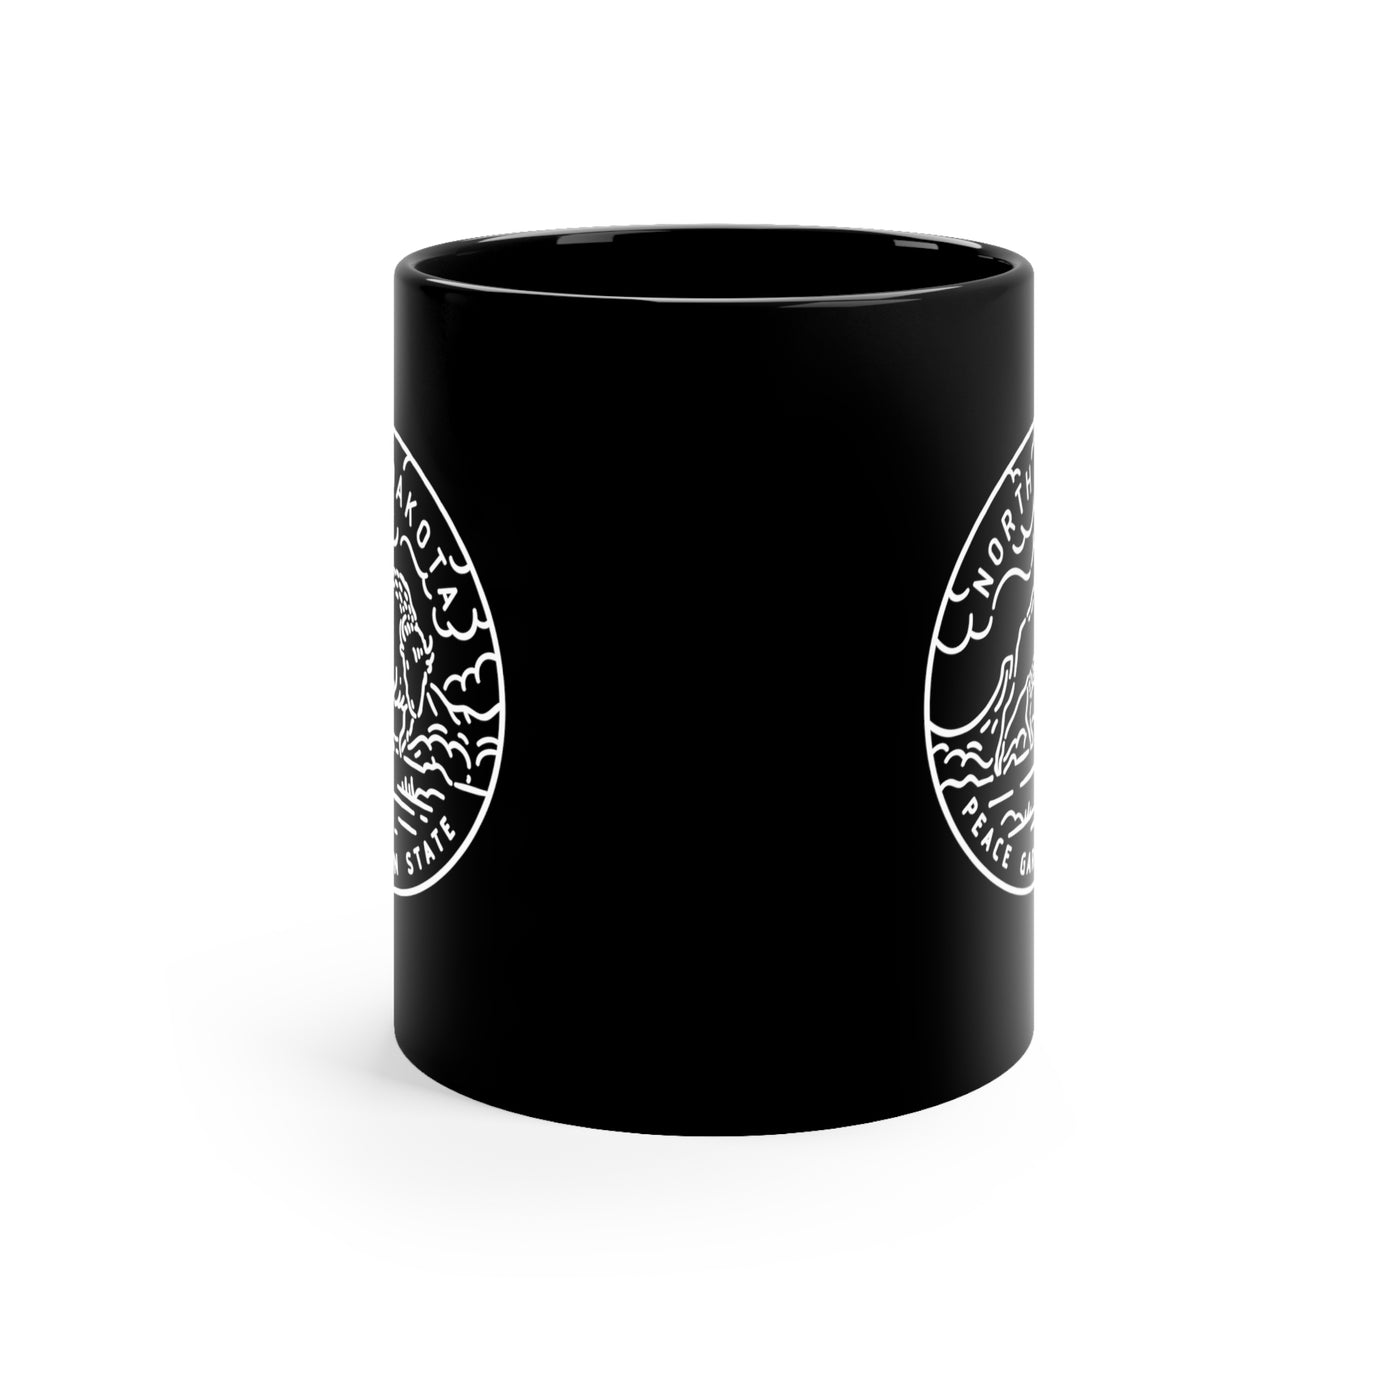 North Dakota State Motto Ceramic Mug